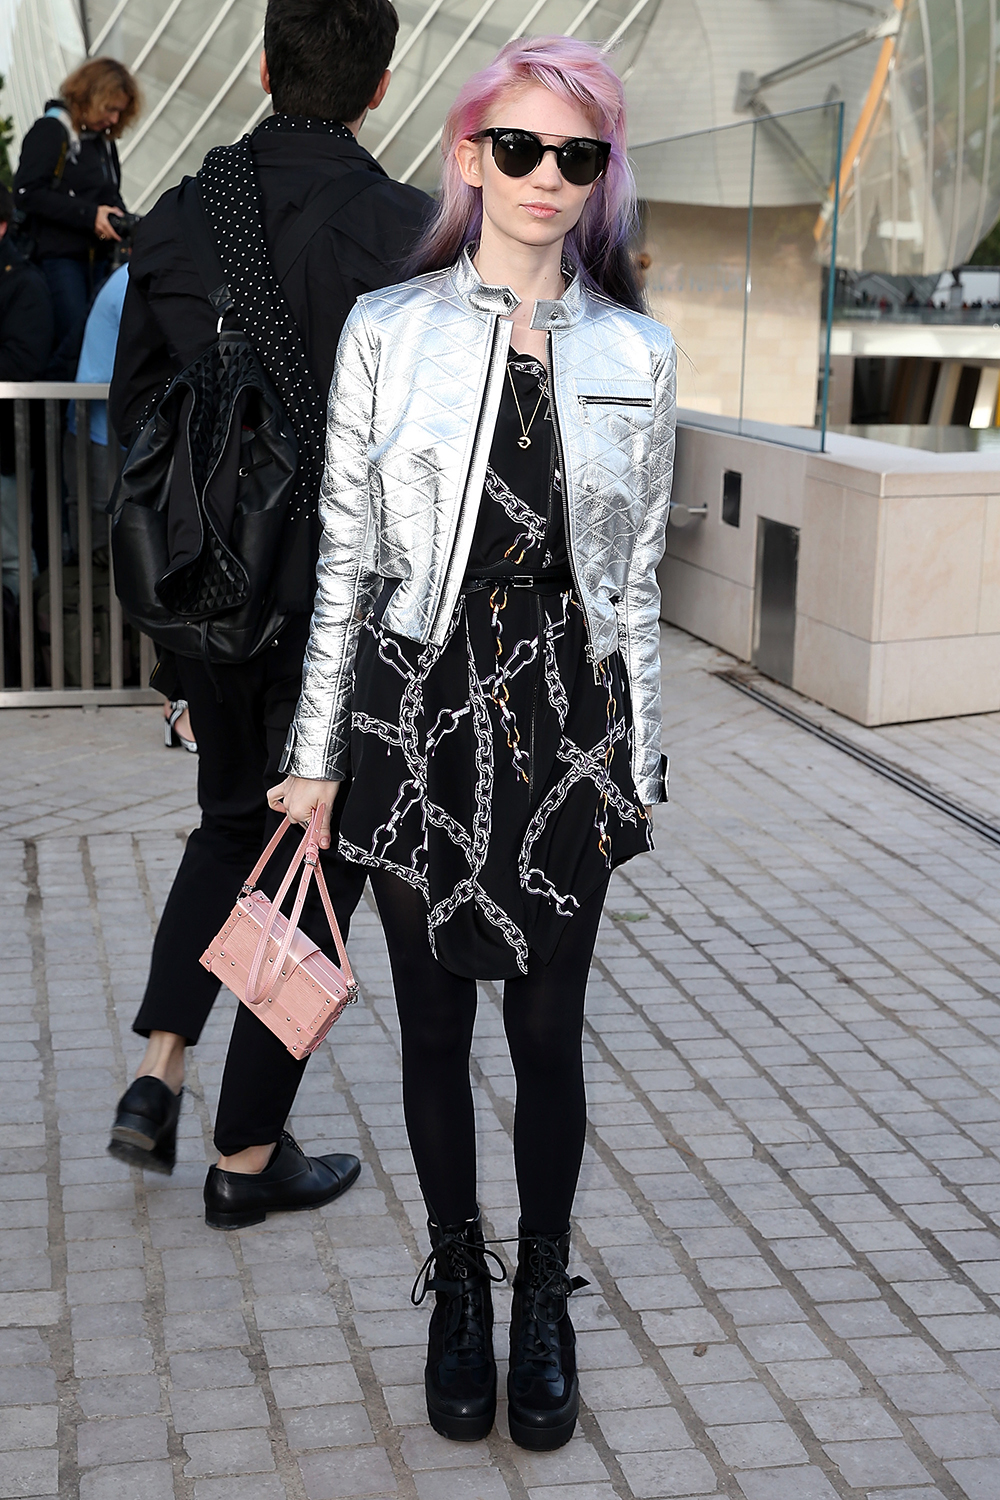 Singer Grimes arrives at the Louis Vuitton show.